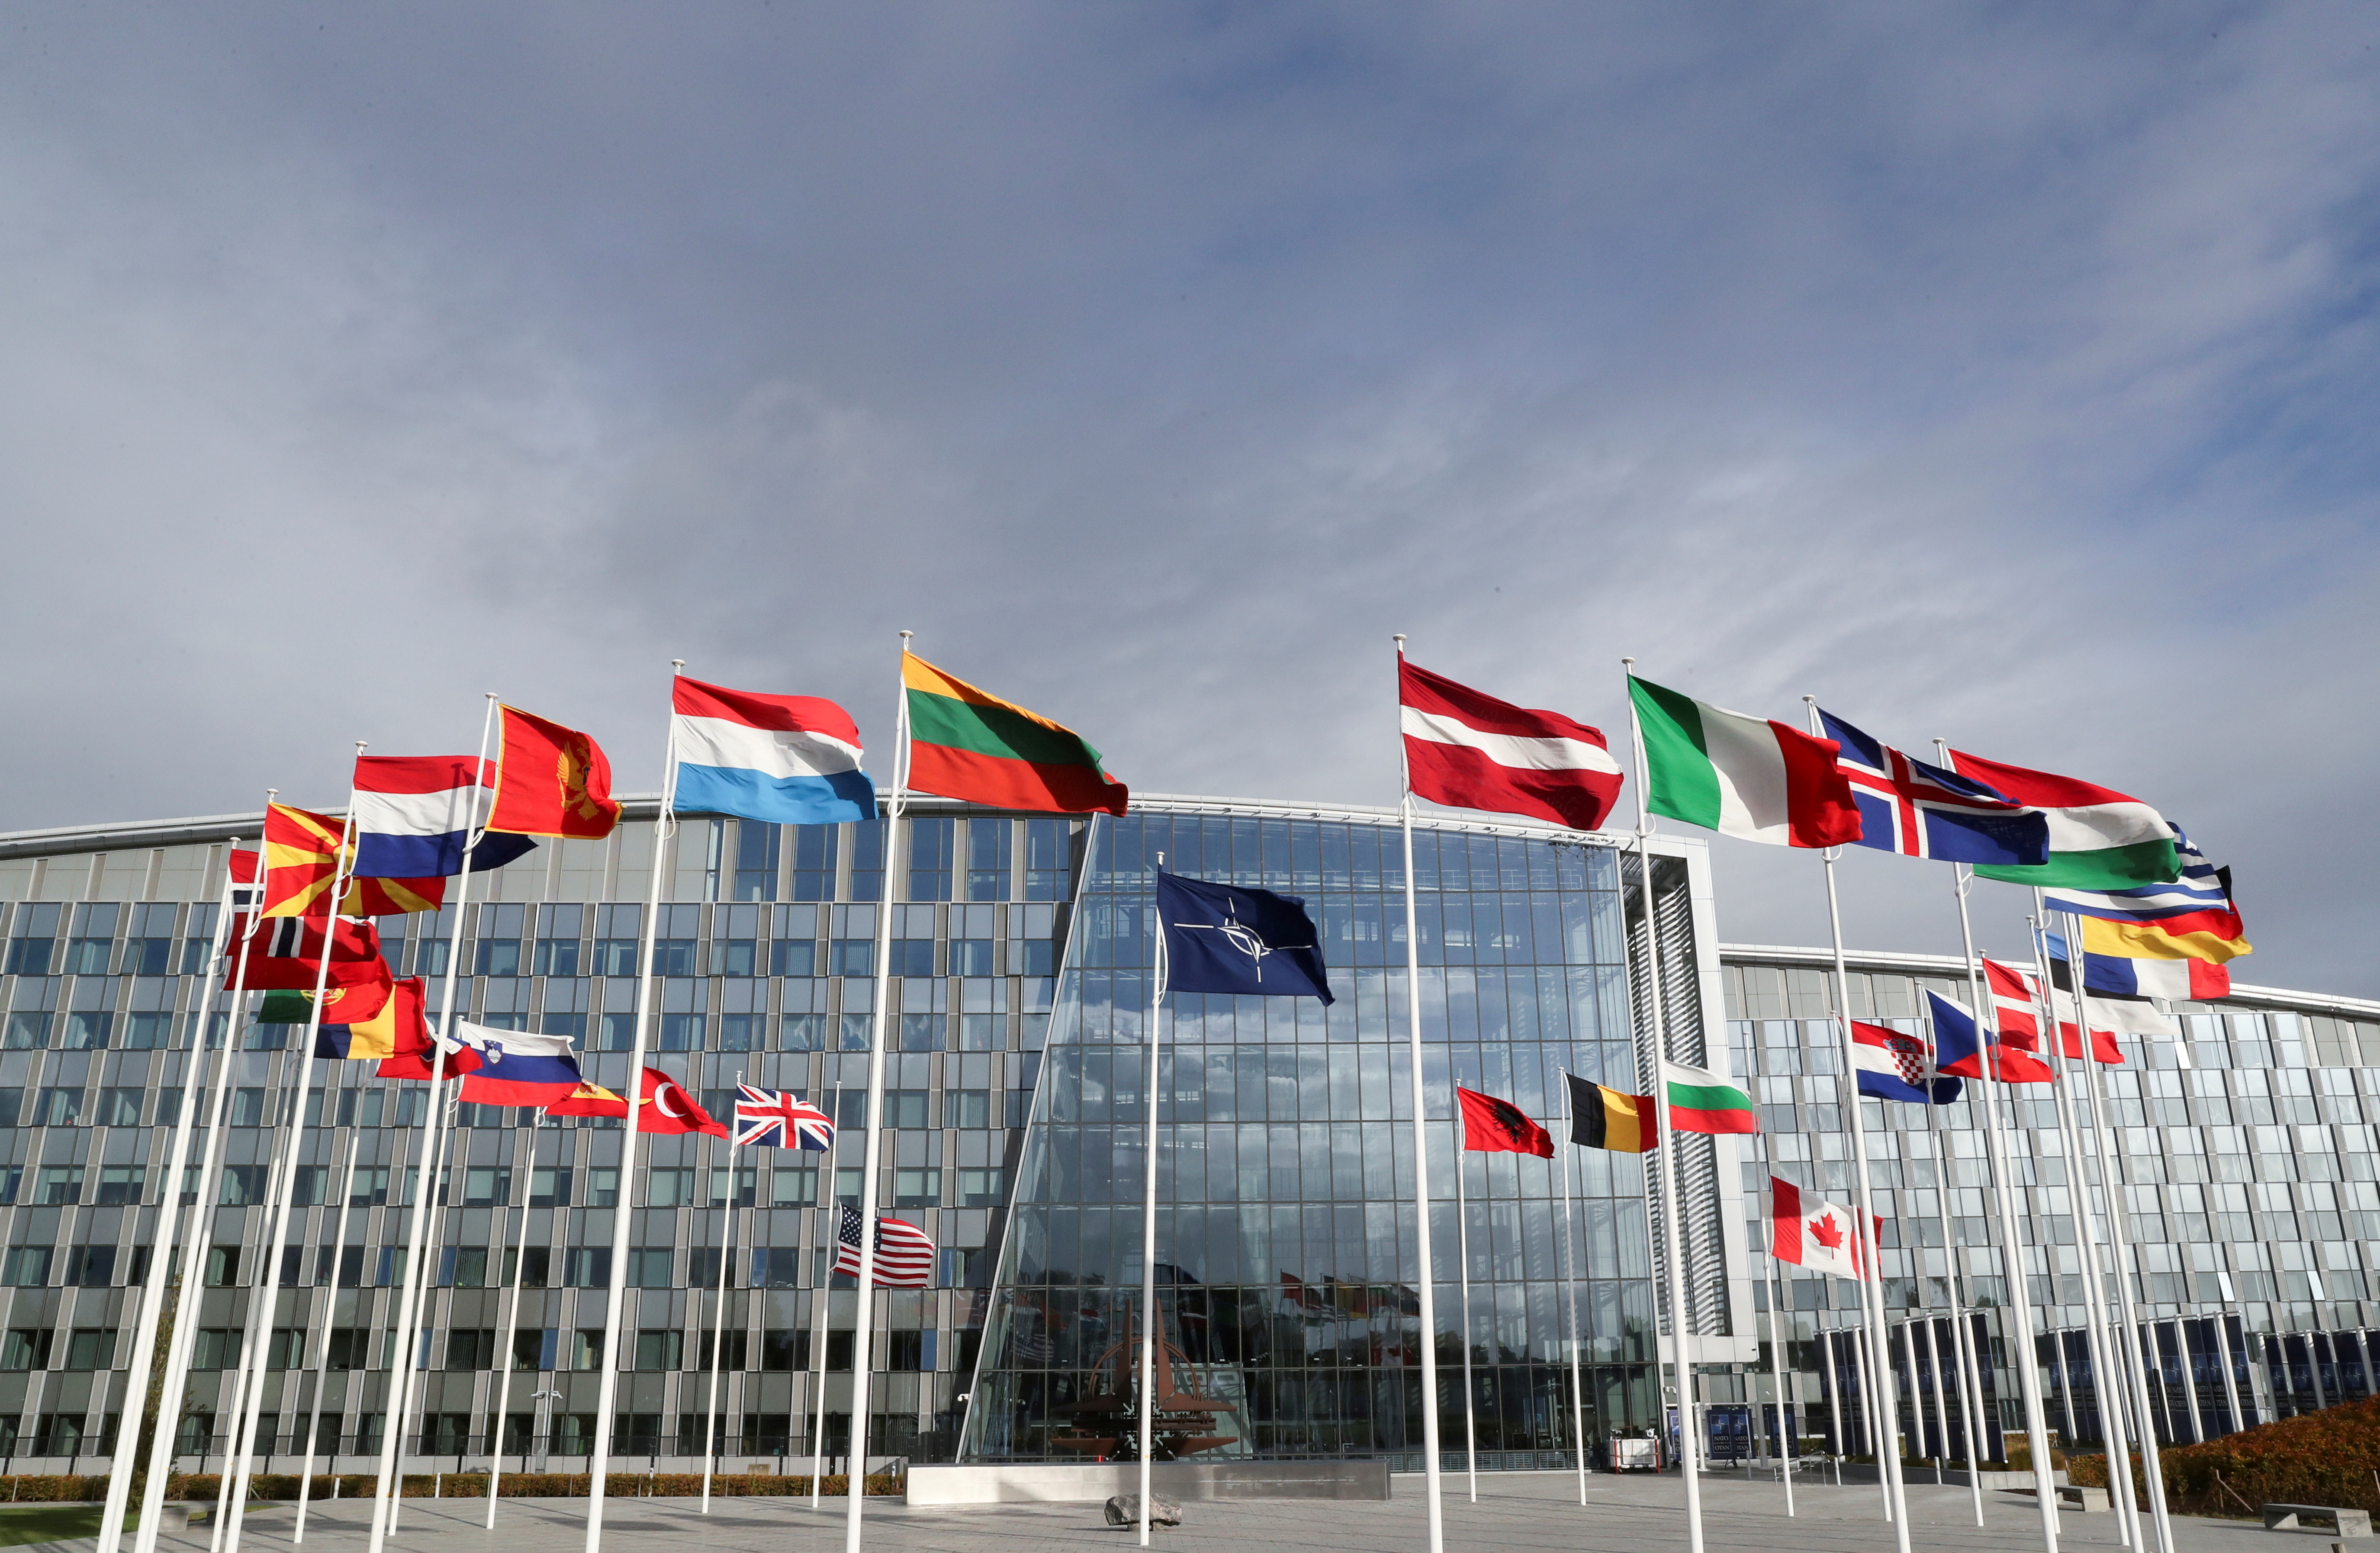 Les banderes onegen fora de la seu de l'Aliança abans d'una reunió dels ministres de Defensa de l'OTAN, a Brussel·les, Bèlgica, el 21 d'octubre de 2021. REUTERS/Pascal Rossignol/Foto d'arxiu